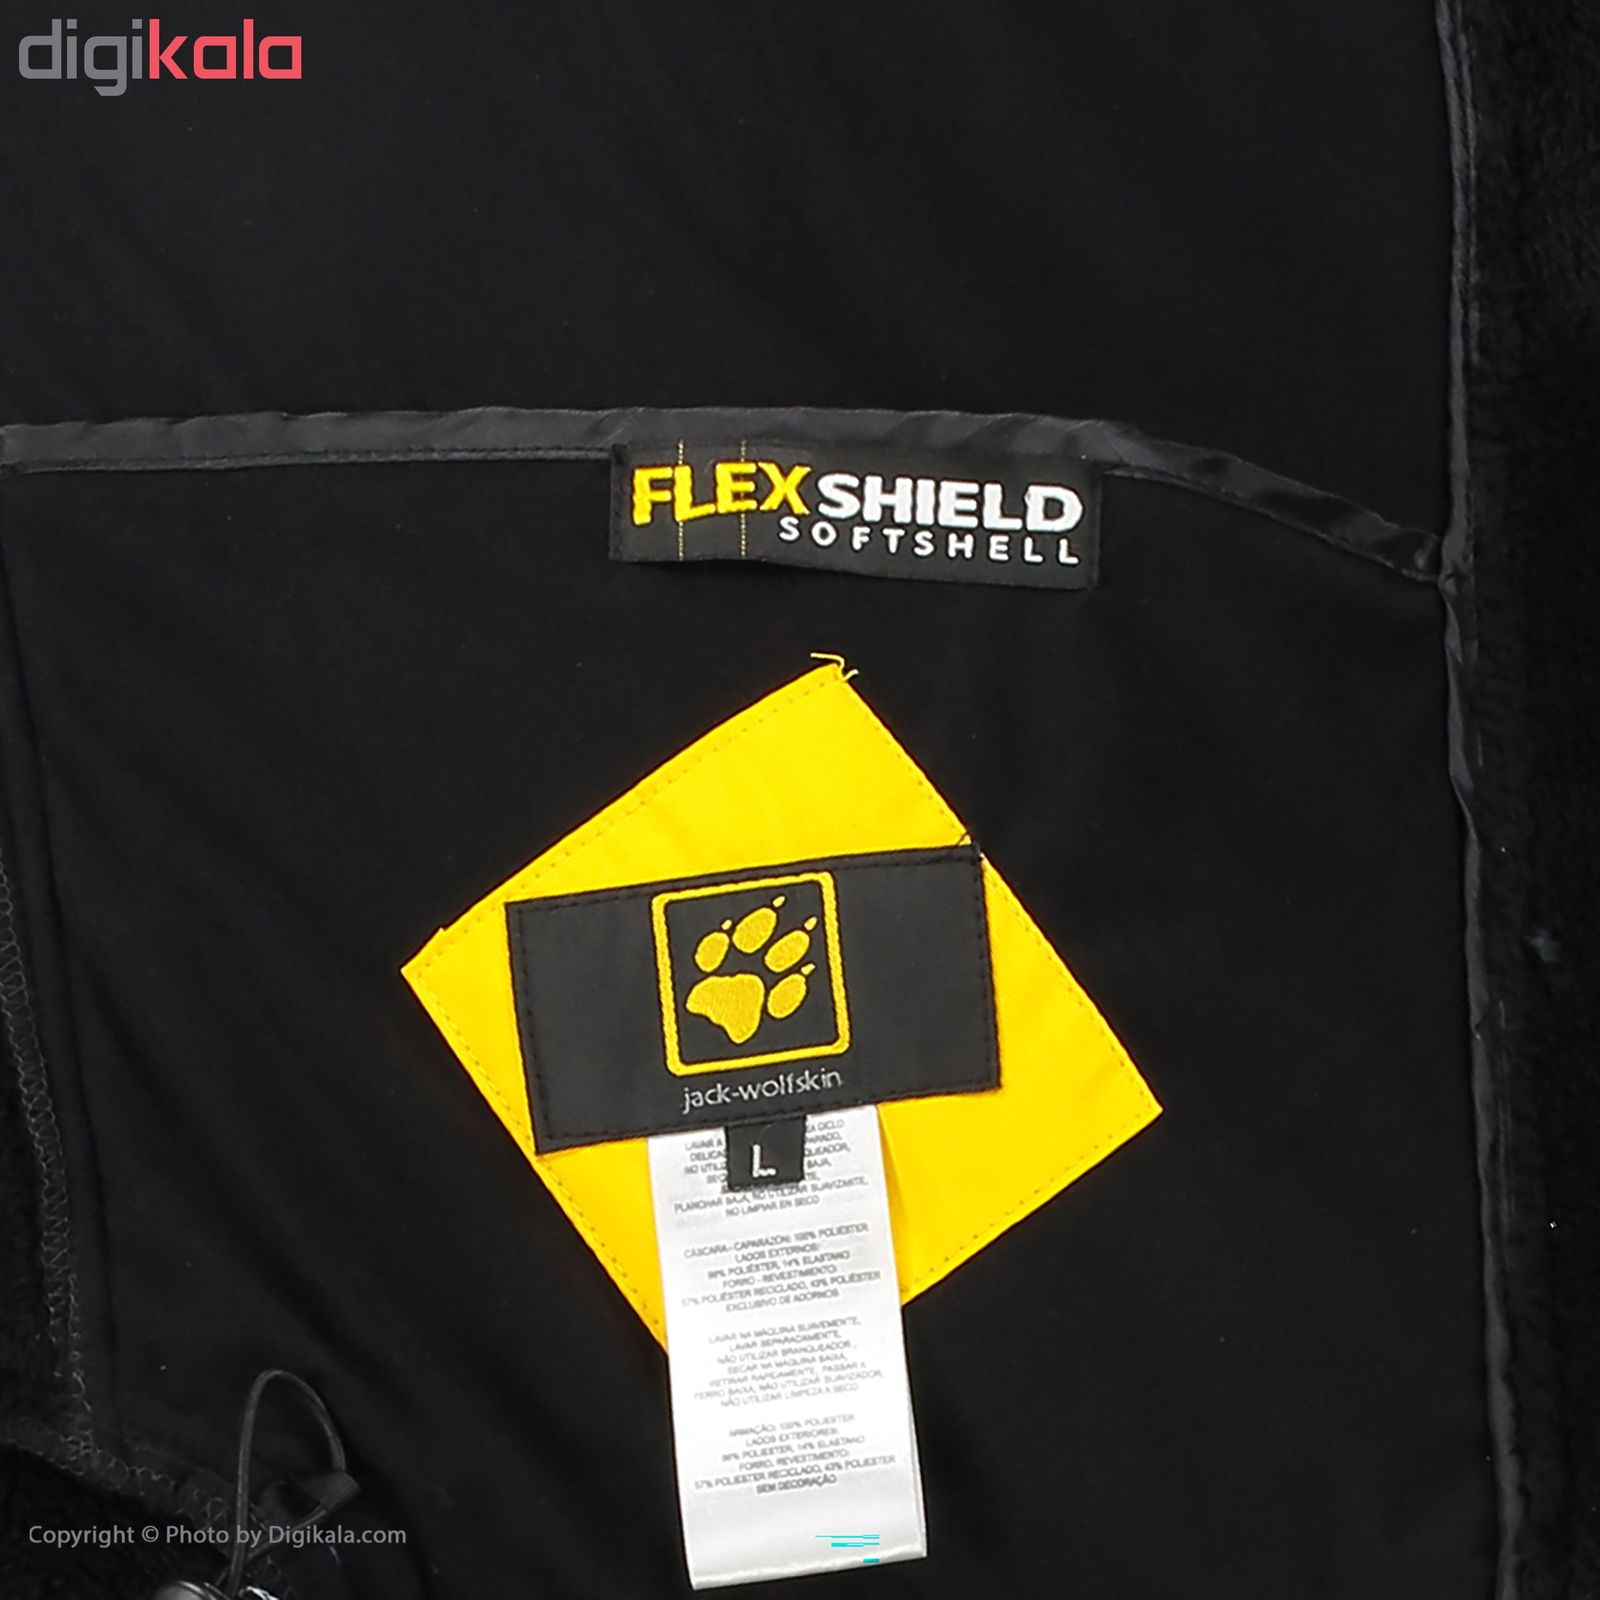 کاپشن کوهنوردی مردانه جک ولف اسکین مدل Flex-shield